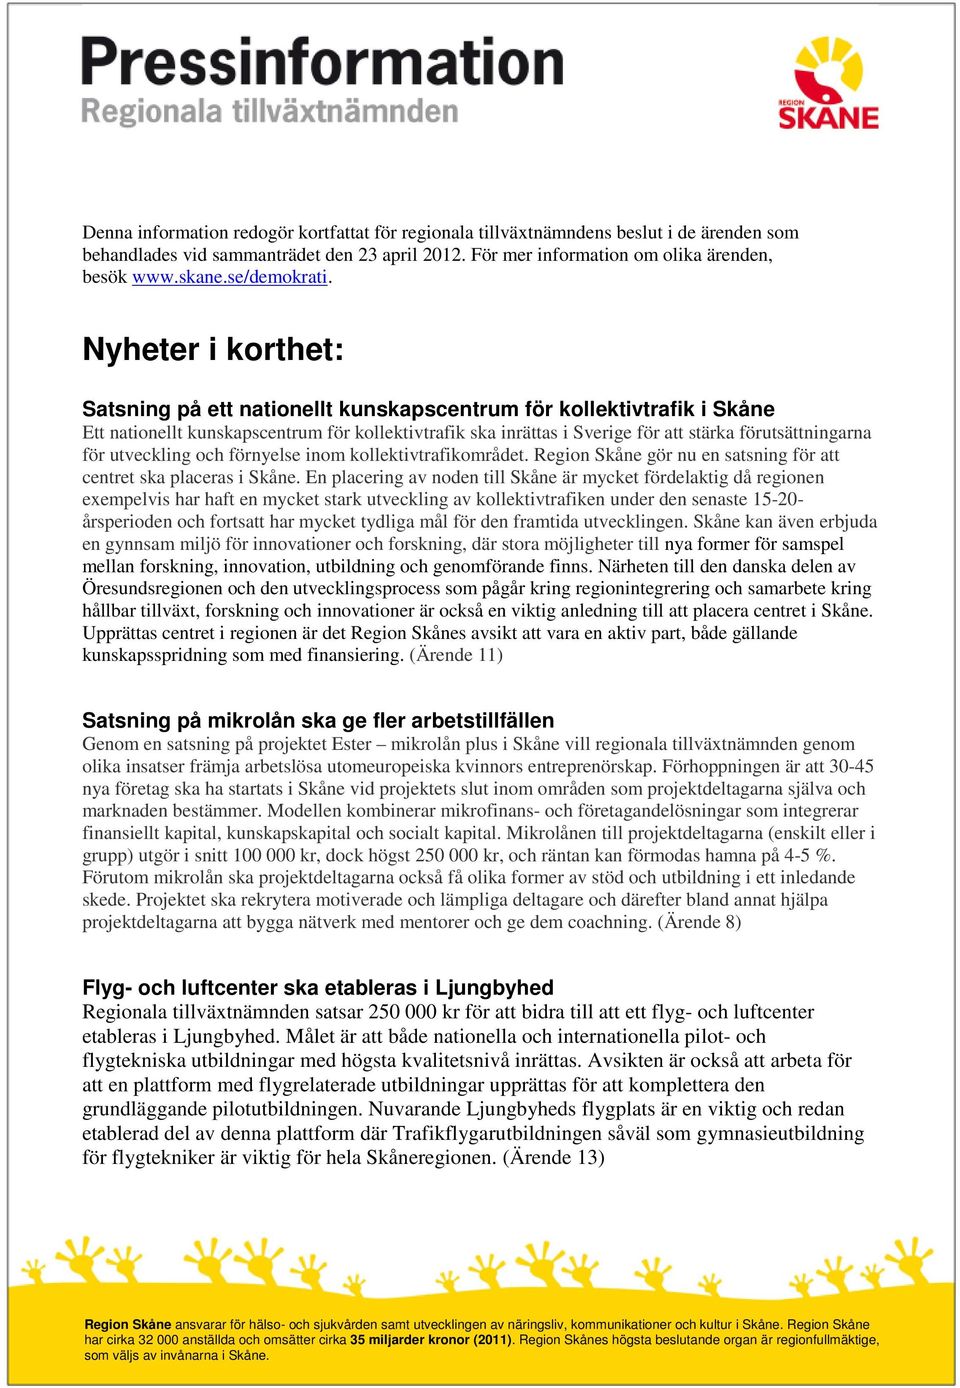 Nyheter i korthet: Satsning på ett nationellt kunskapscentrum för kollektivtrafik i Skåne Ett nationellt kunskapscentrum för kollektivtrafik ska inrättas i Sverige för att stärka förutsättningarna